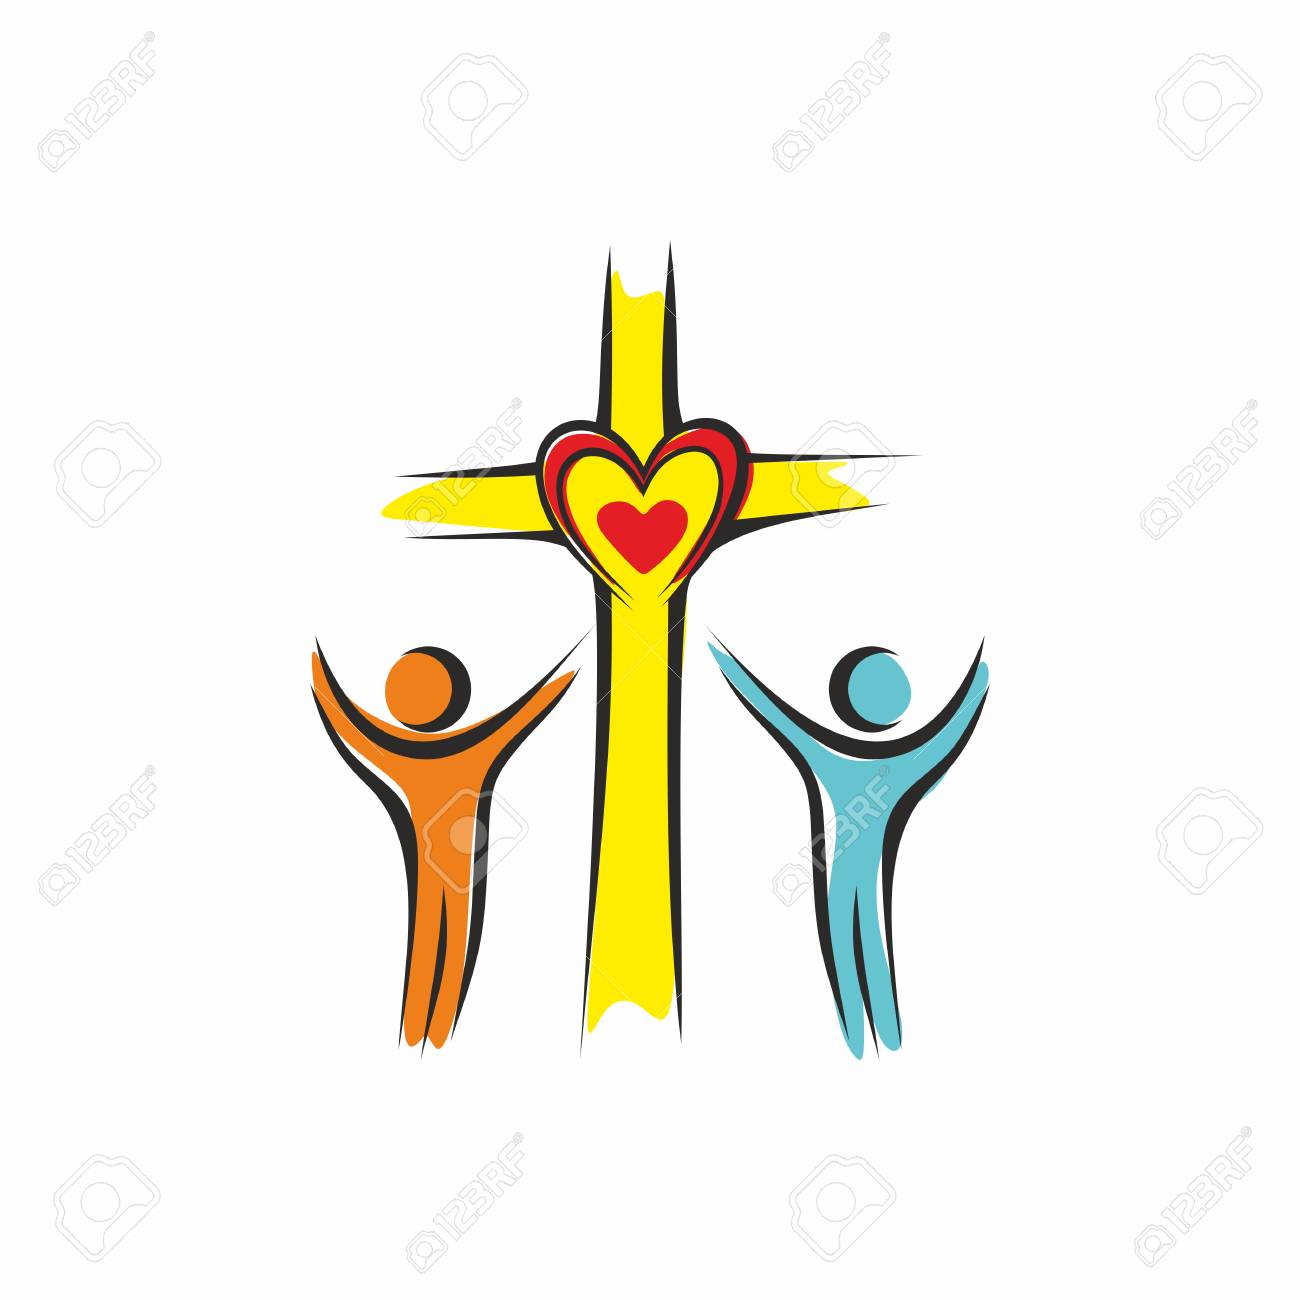 99640752-church-logo-loving-god